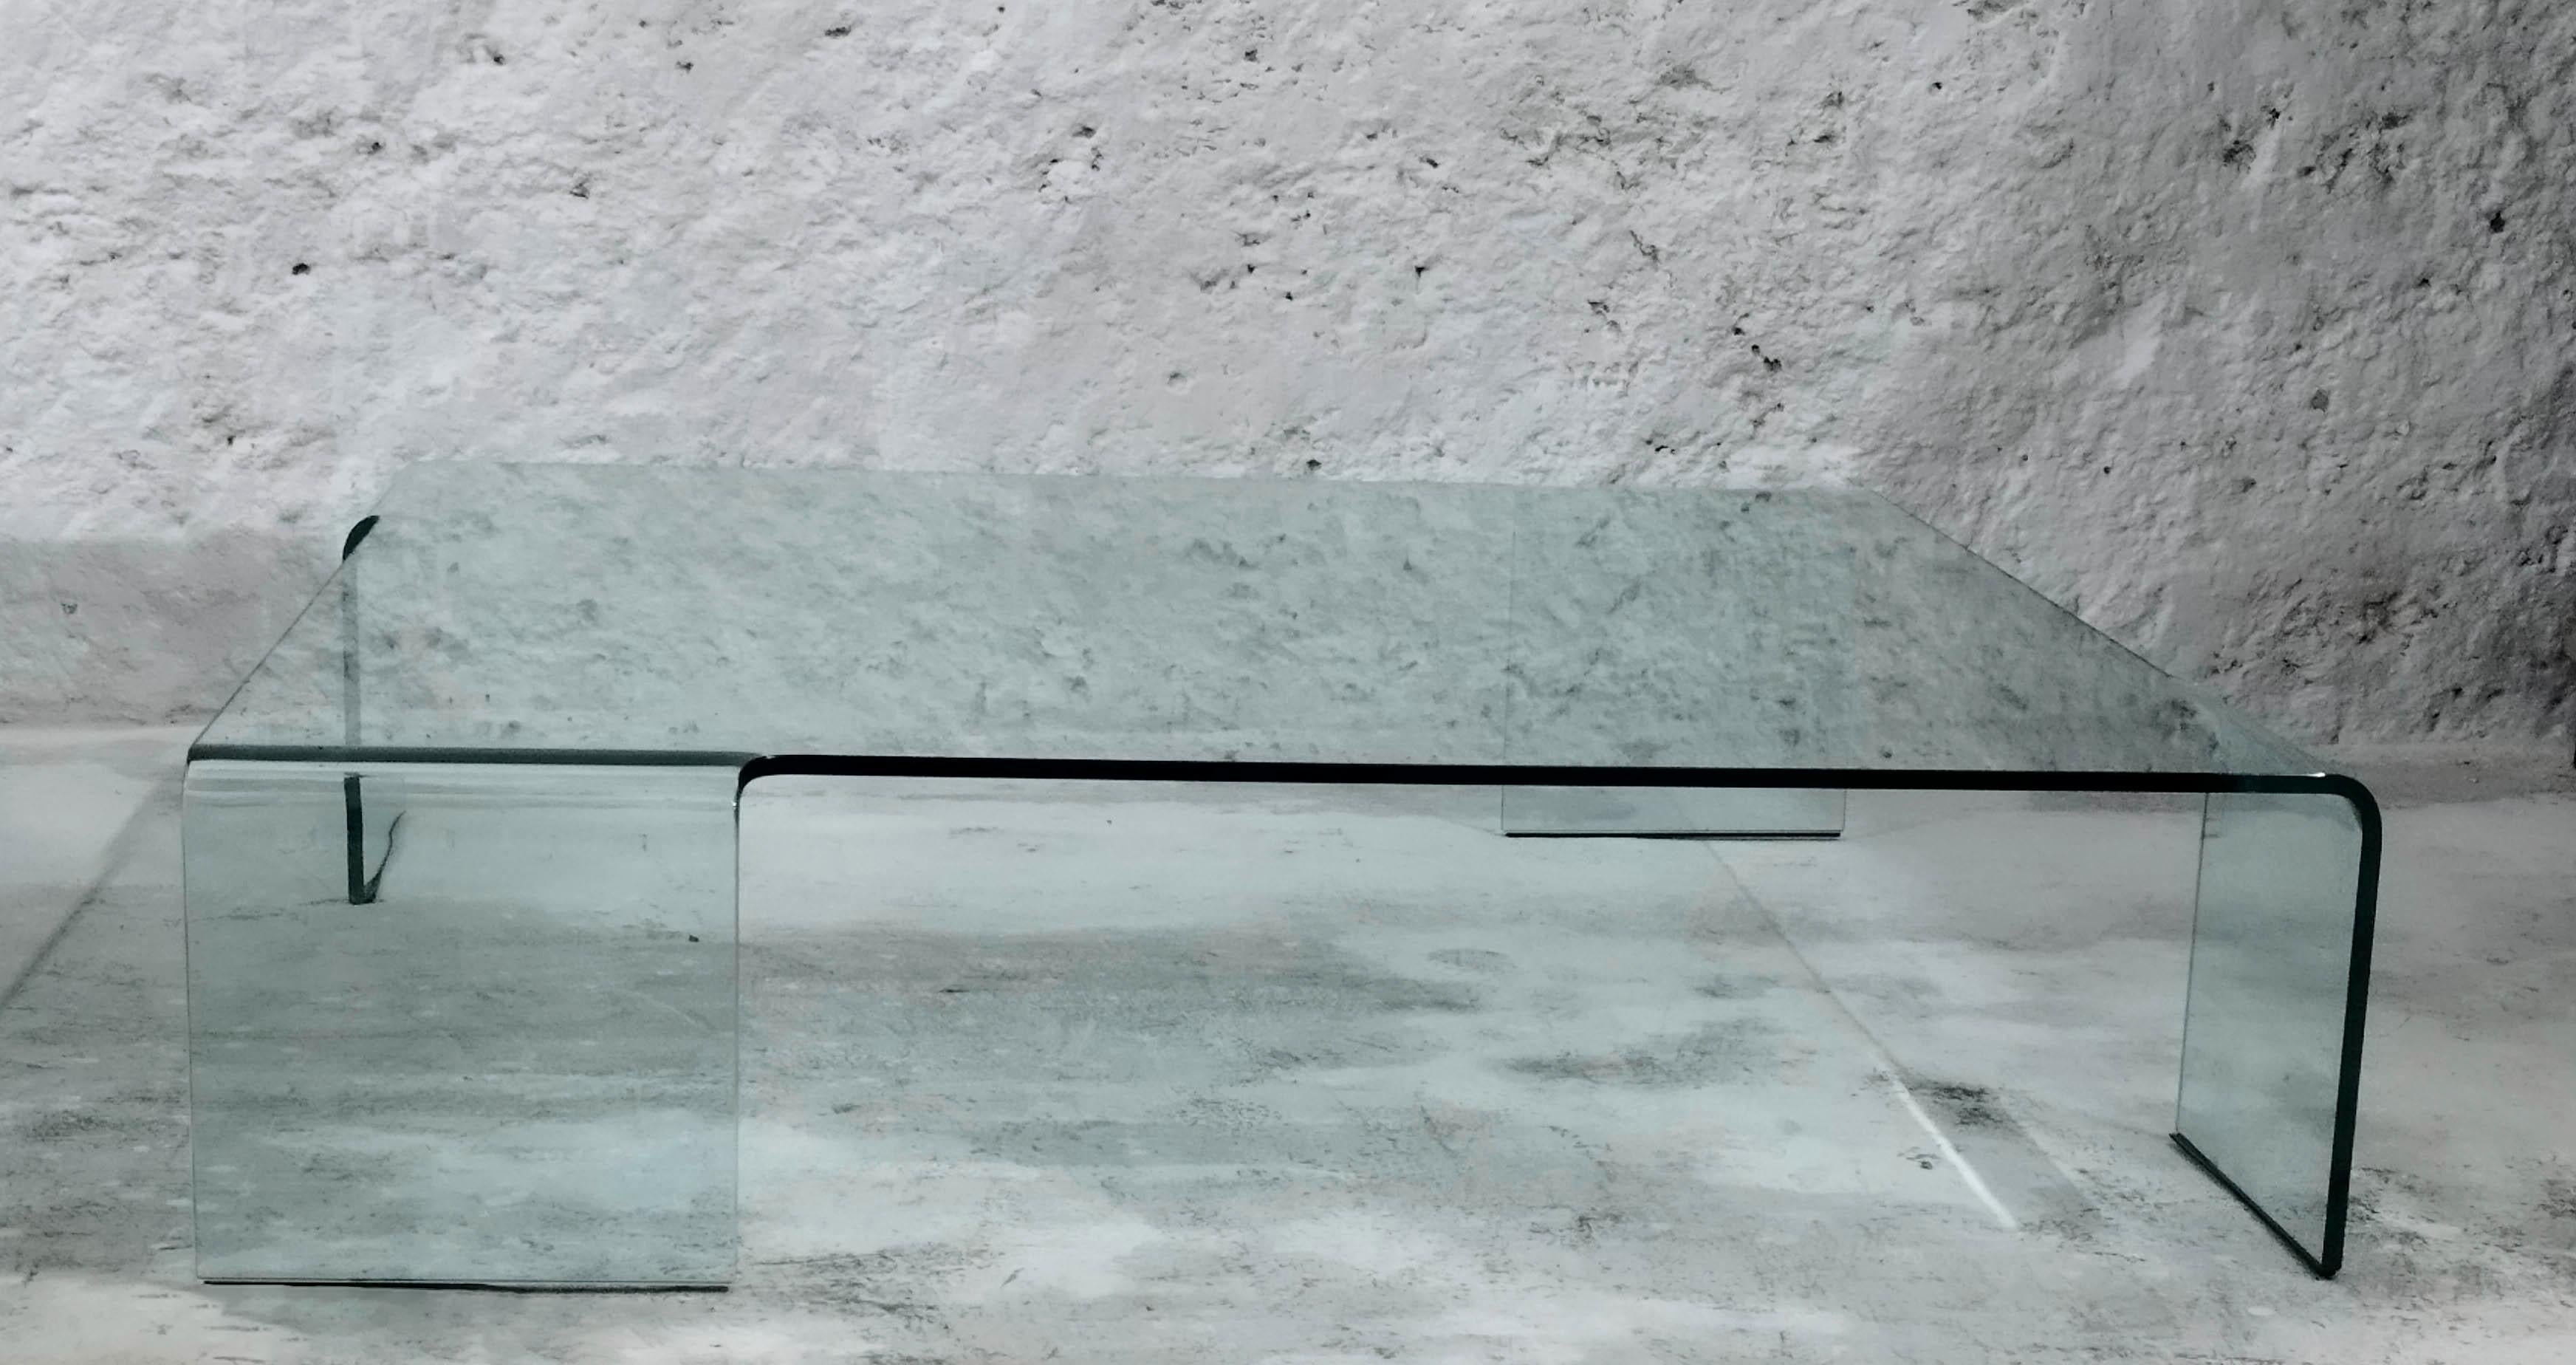 Rodolfo Dordoni ha disegnato diversi mobili per FIAM, tra cui Neutra, il tavolo basso in vetro curvato.
L'architetto e designer Rodolfo Dordoni è nato nel 1954 a Milano, dove si è laureato in architettura nel 1979.
La sua esperienza nel campo del